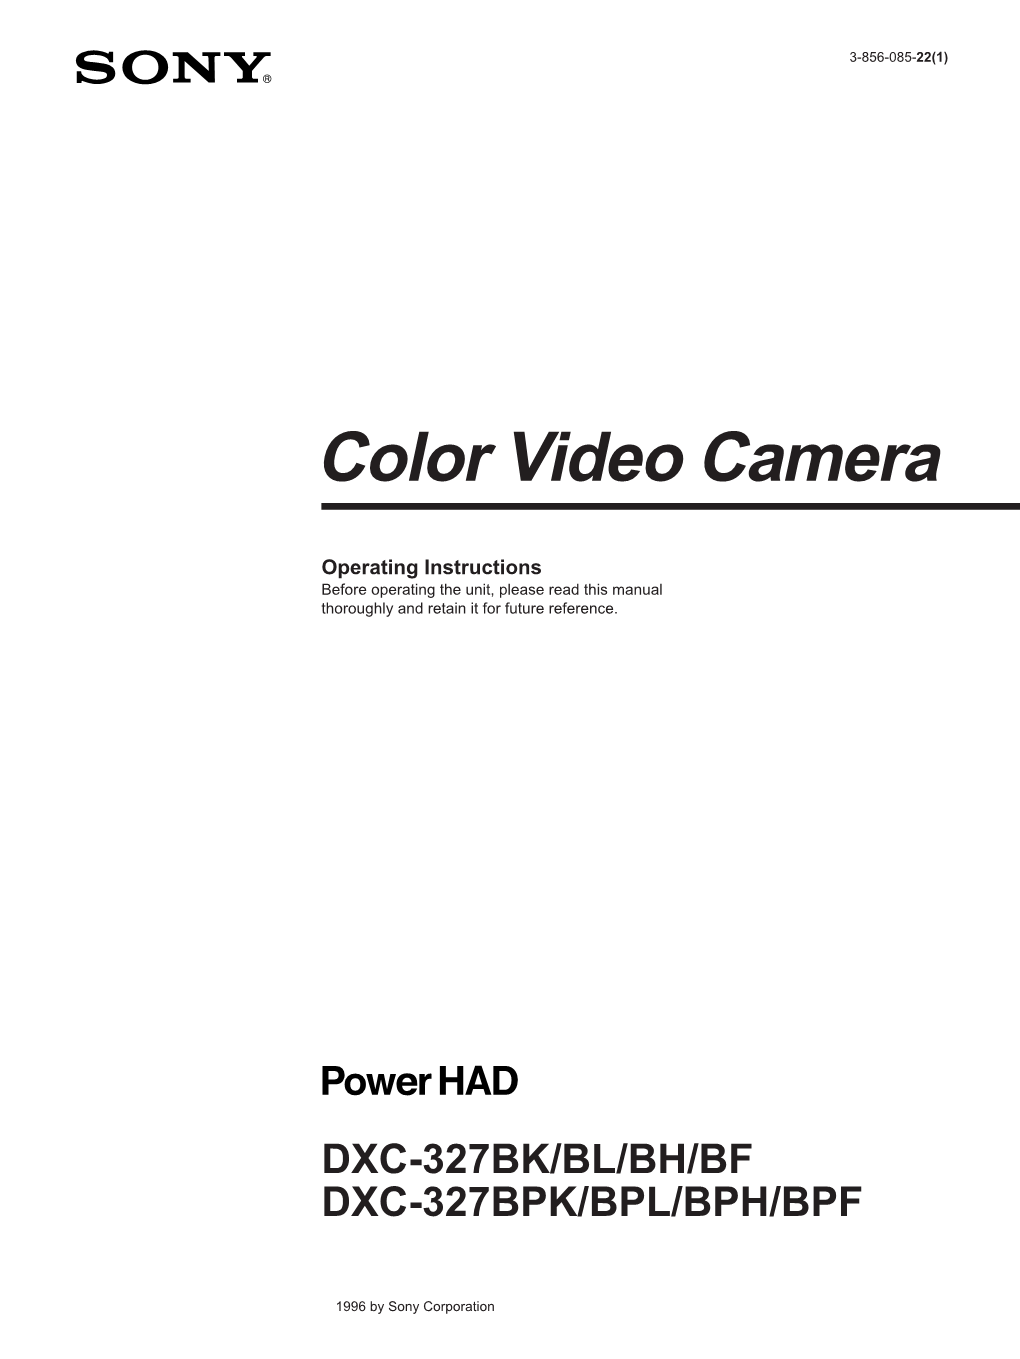 Color Video Camera